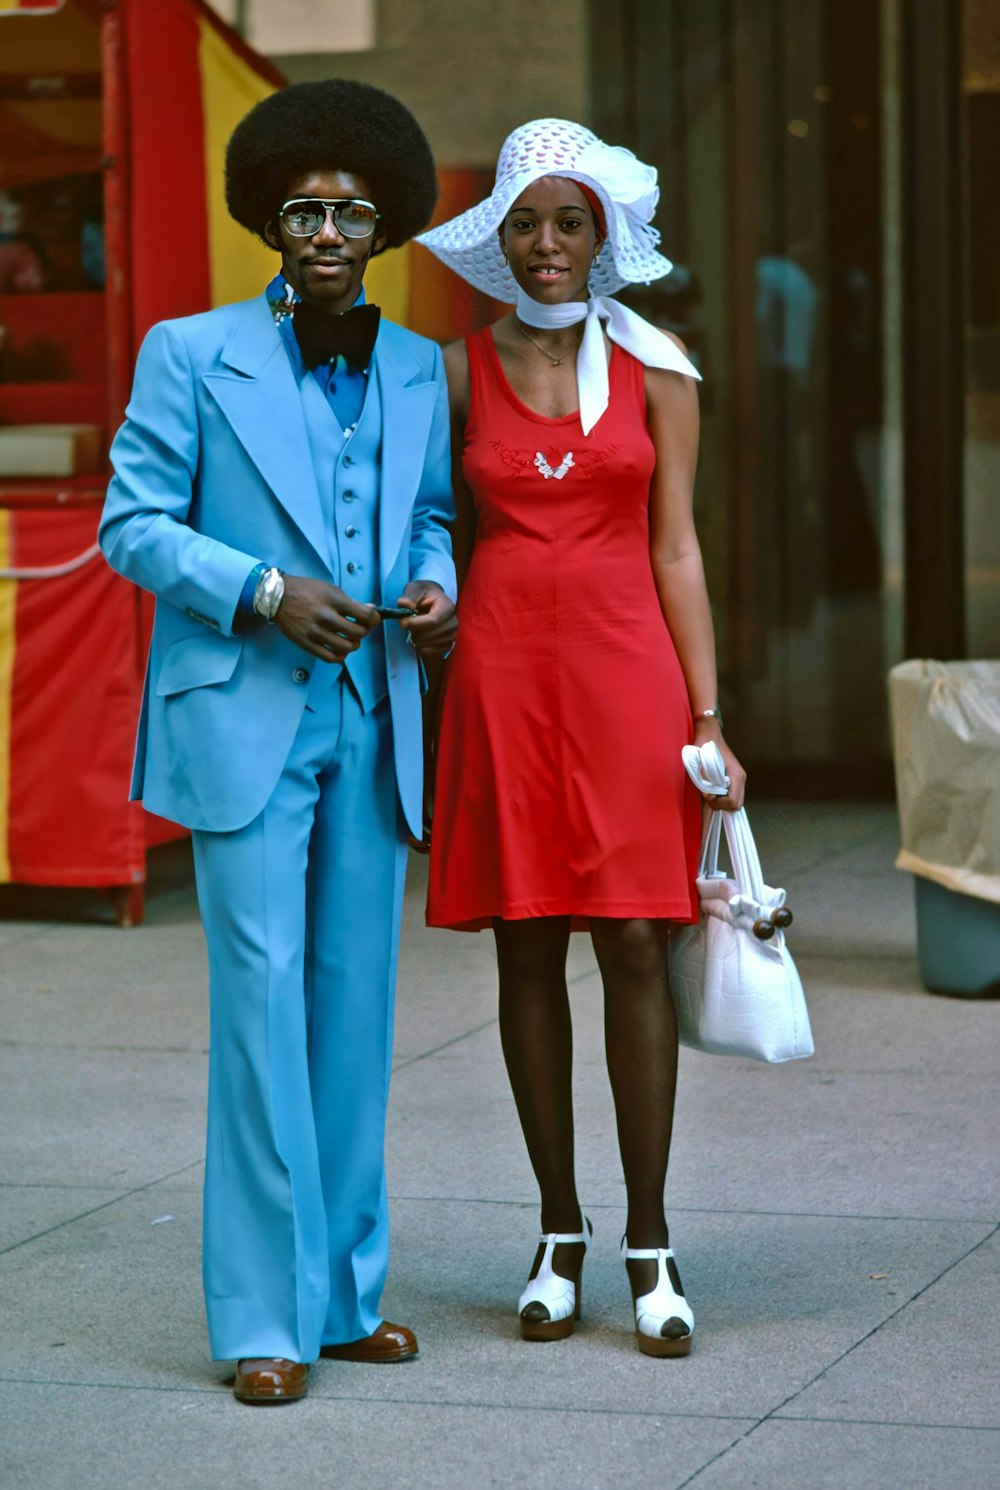 파란색과 빨간색 옷을 입은 남자와 여자